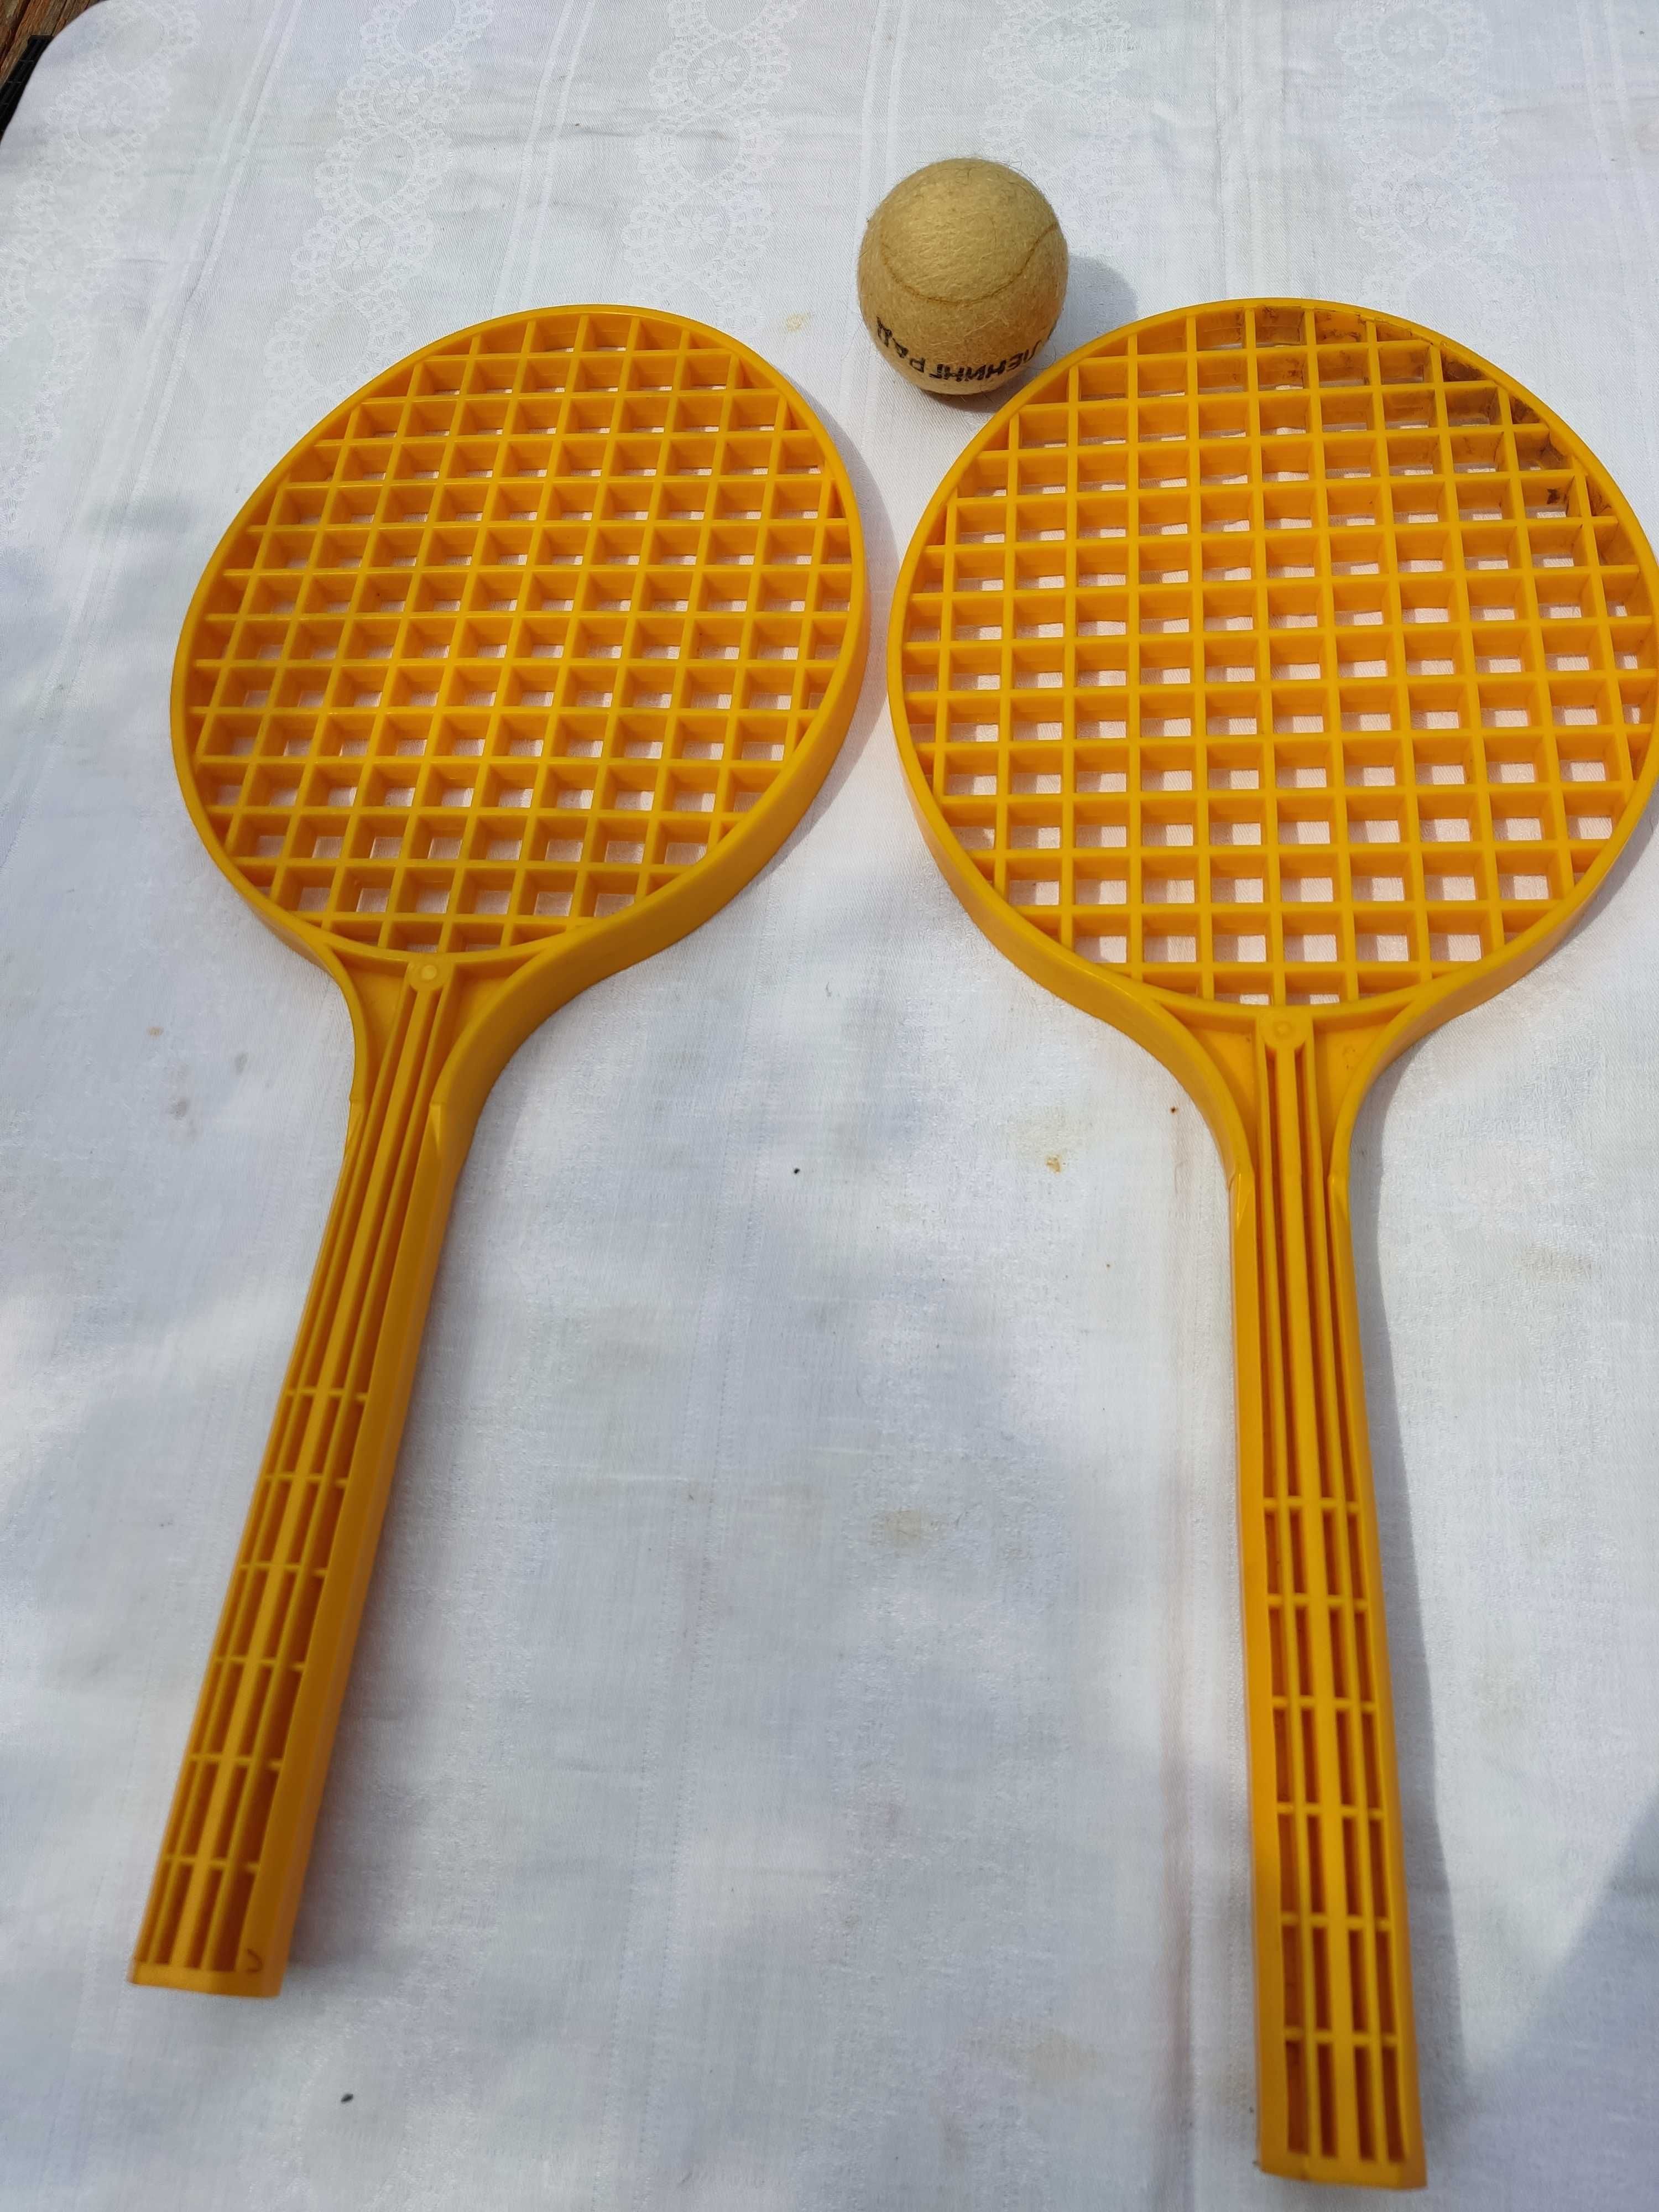 тенниспласт две прочные пластиковые ракетки и мячик.